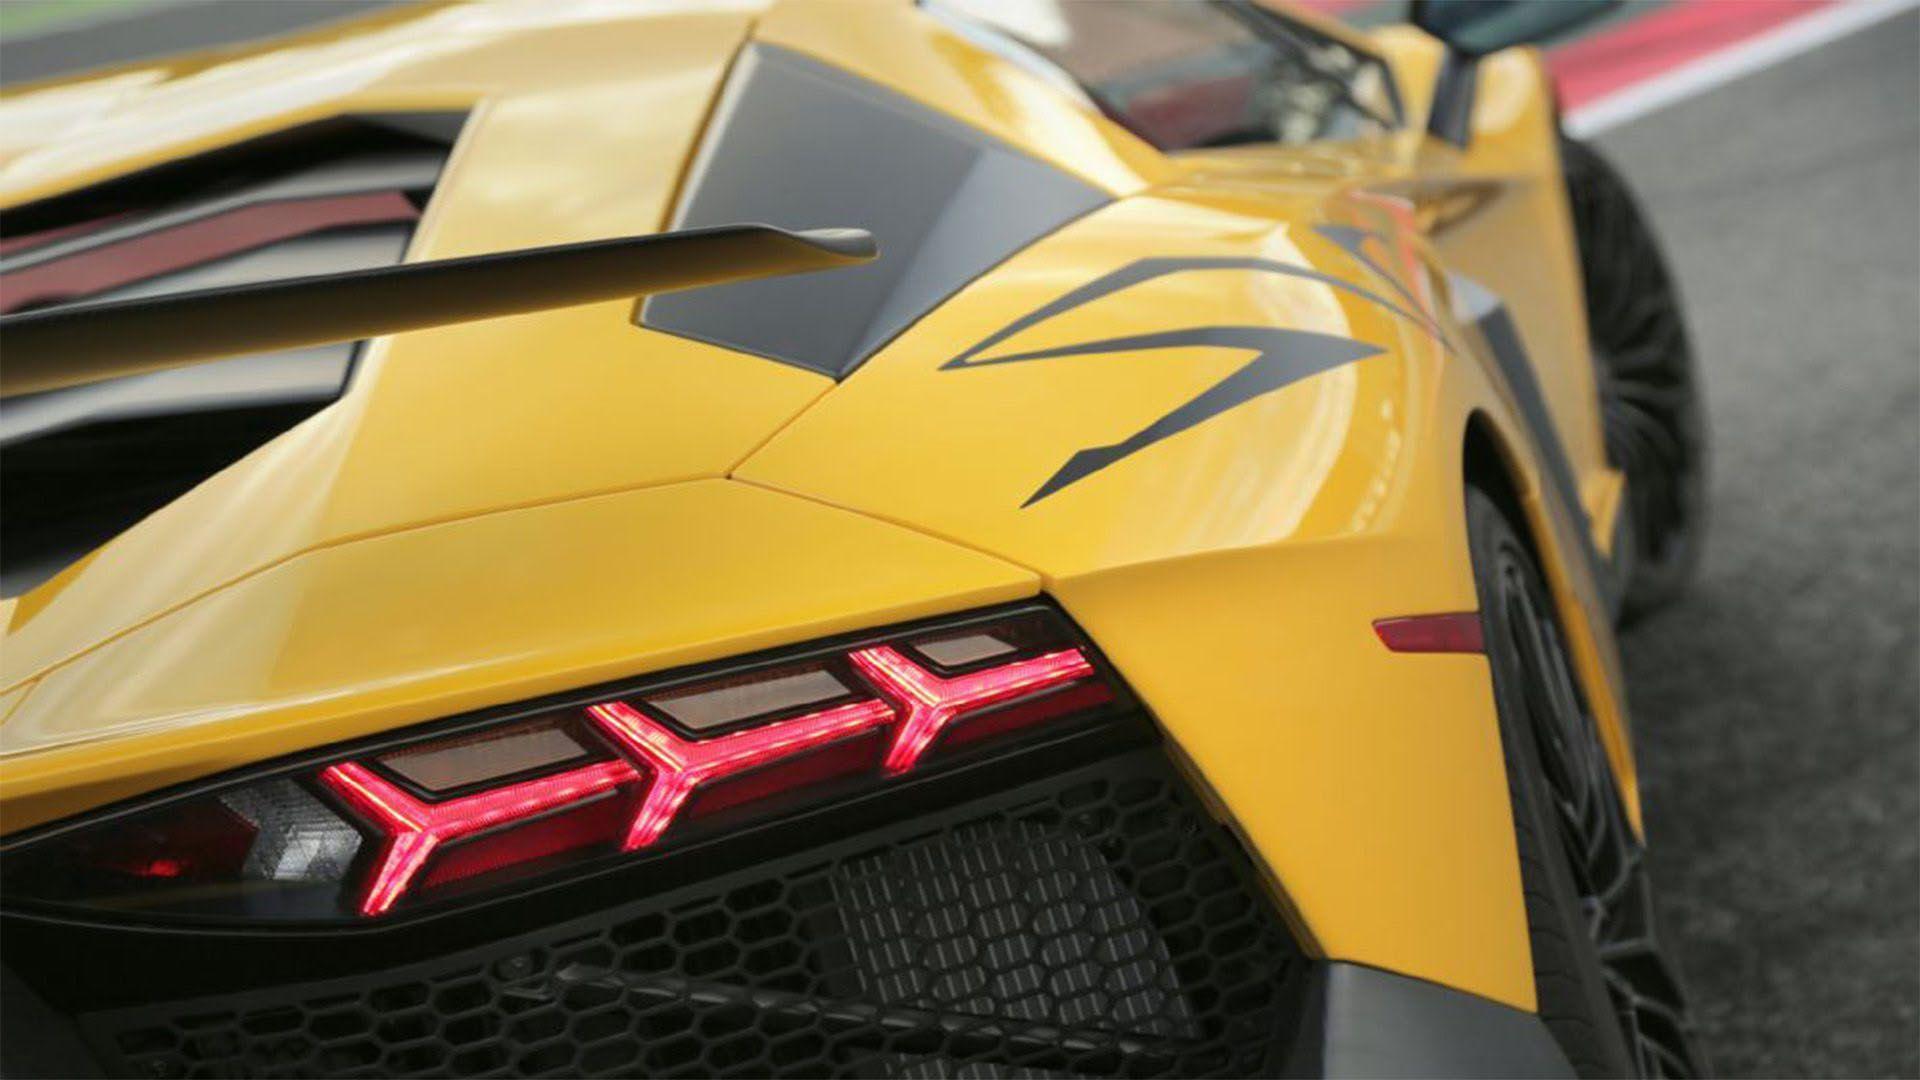 Lamborghini Centenario Wallpapers - Top Free Lamborghini Centenario  Backgrounds - WallpaperAccess